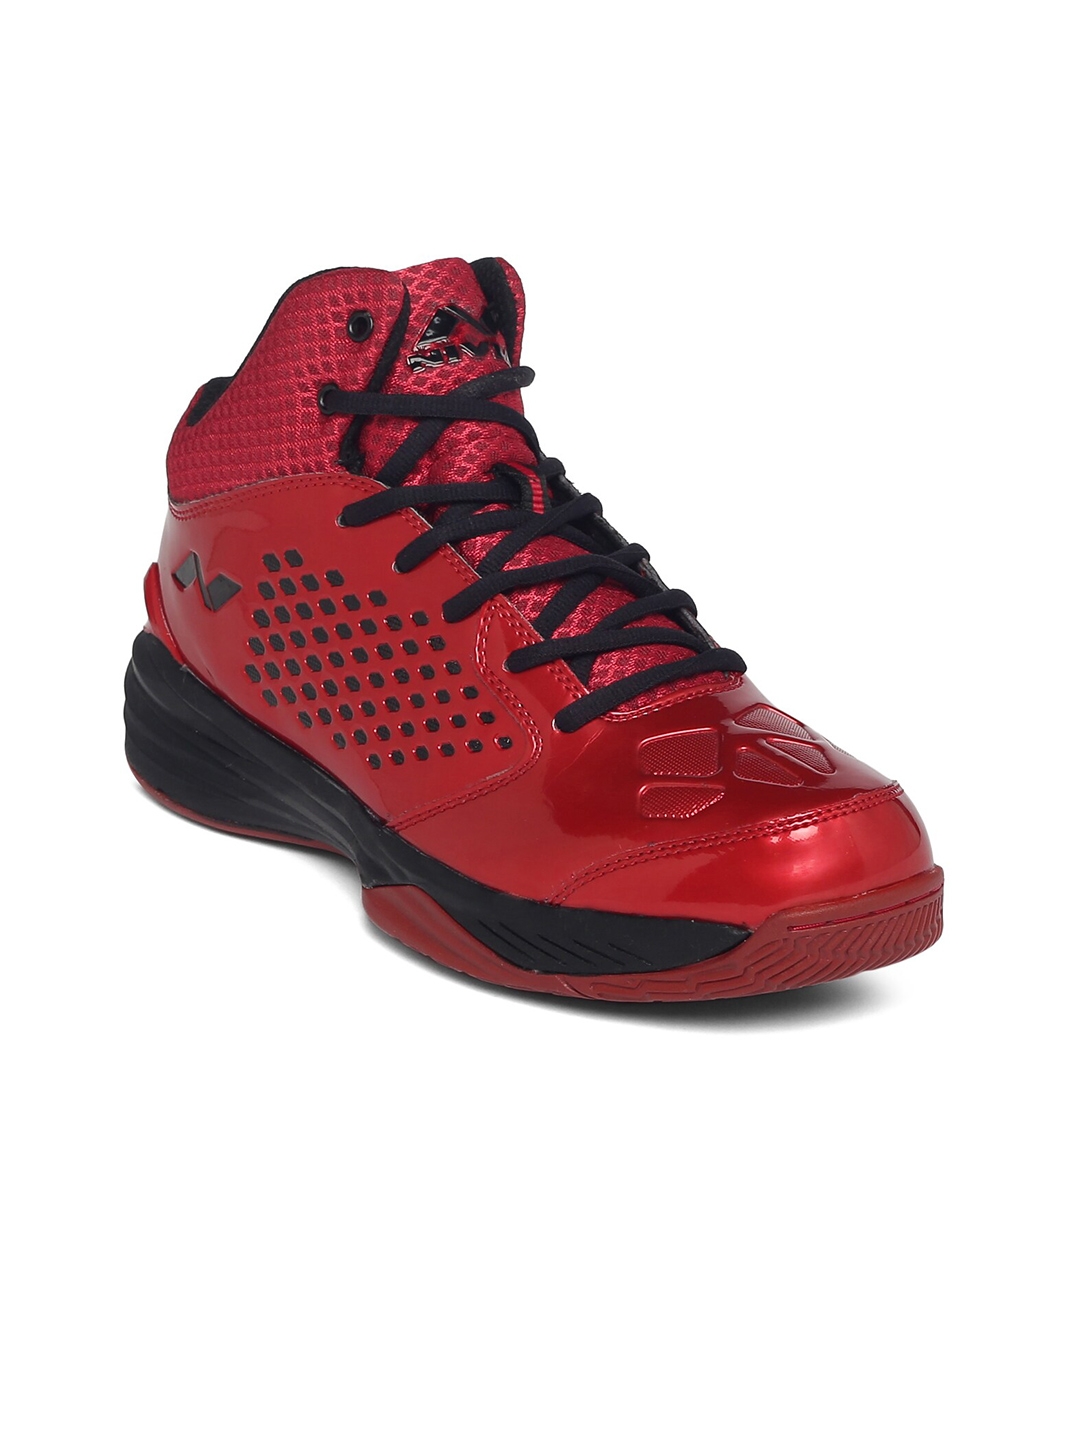 NIVIA Men Red Basketball Non Marking Shoes